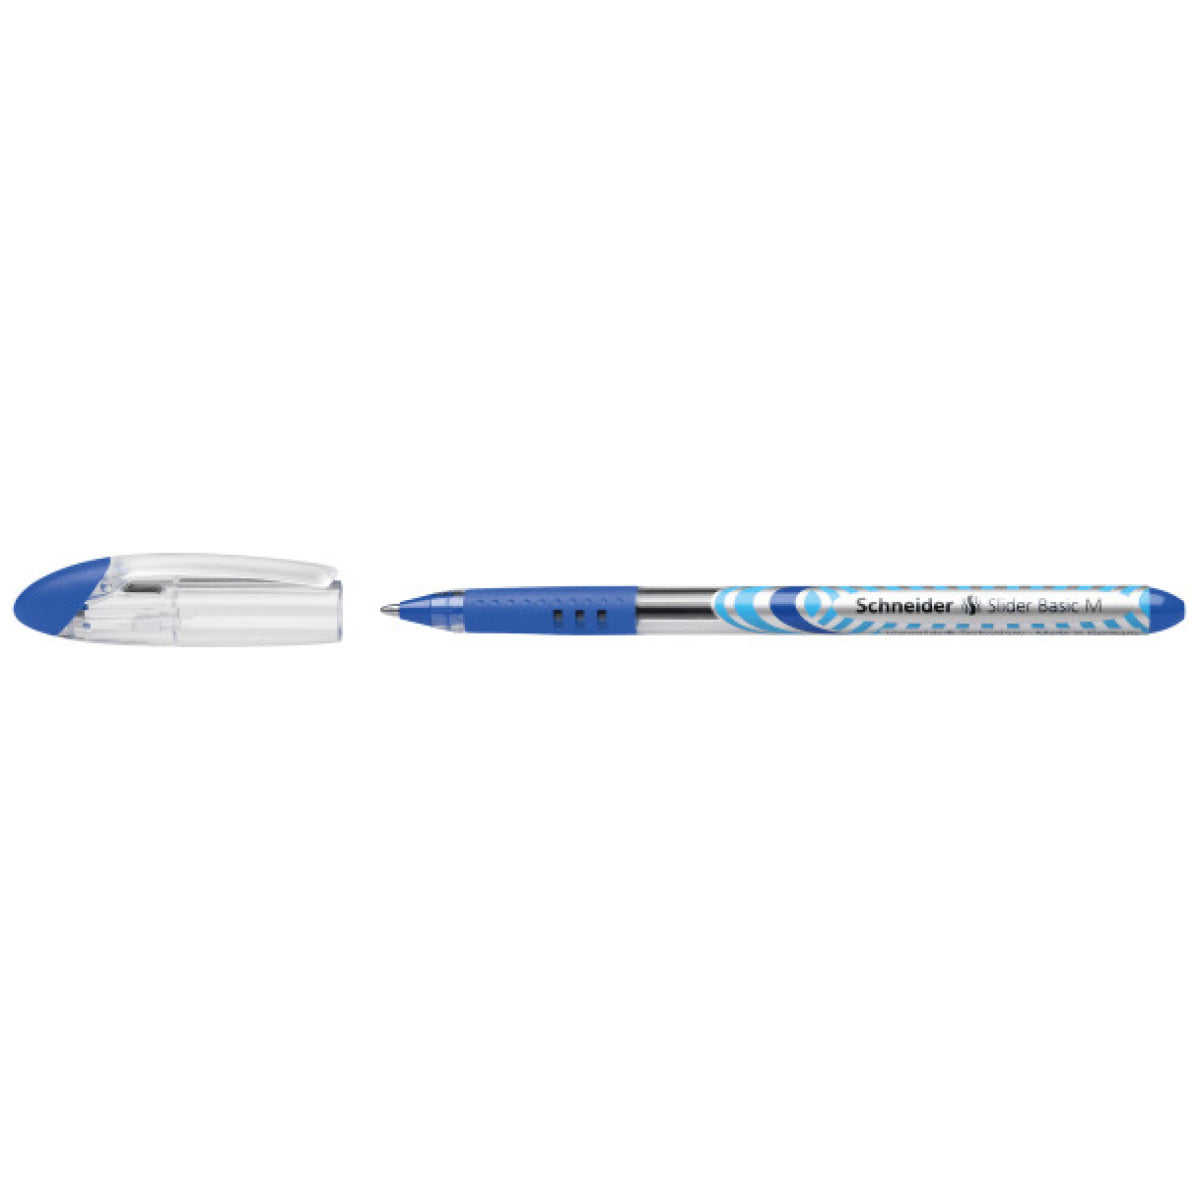 Schneider Pen Slider Basic M || قلم شنايدر سلايدر بيسك ام